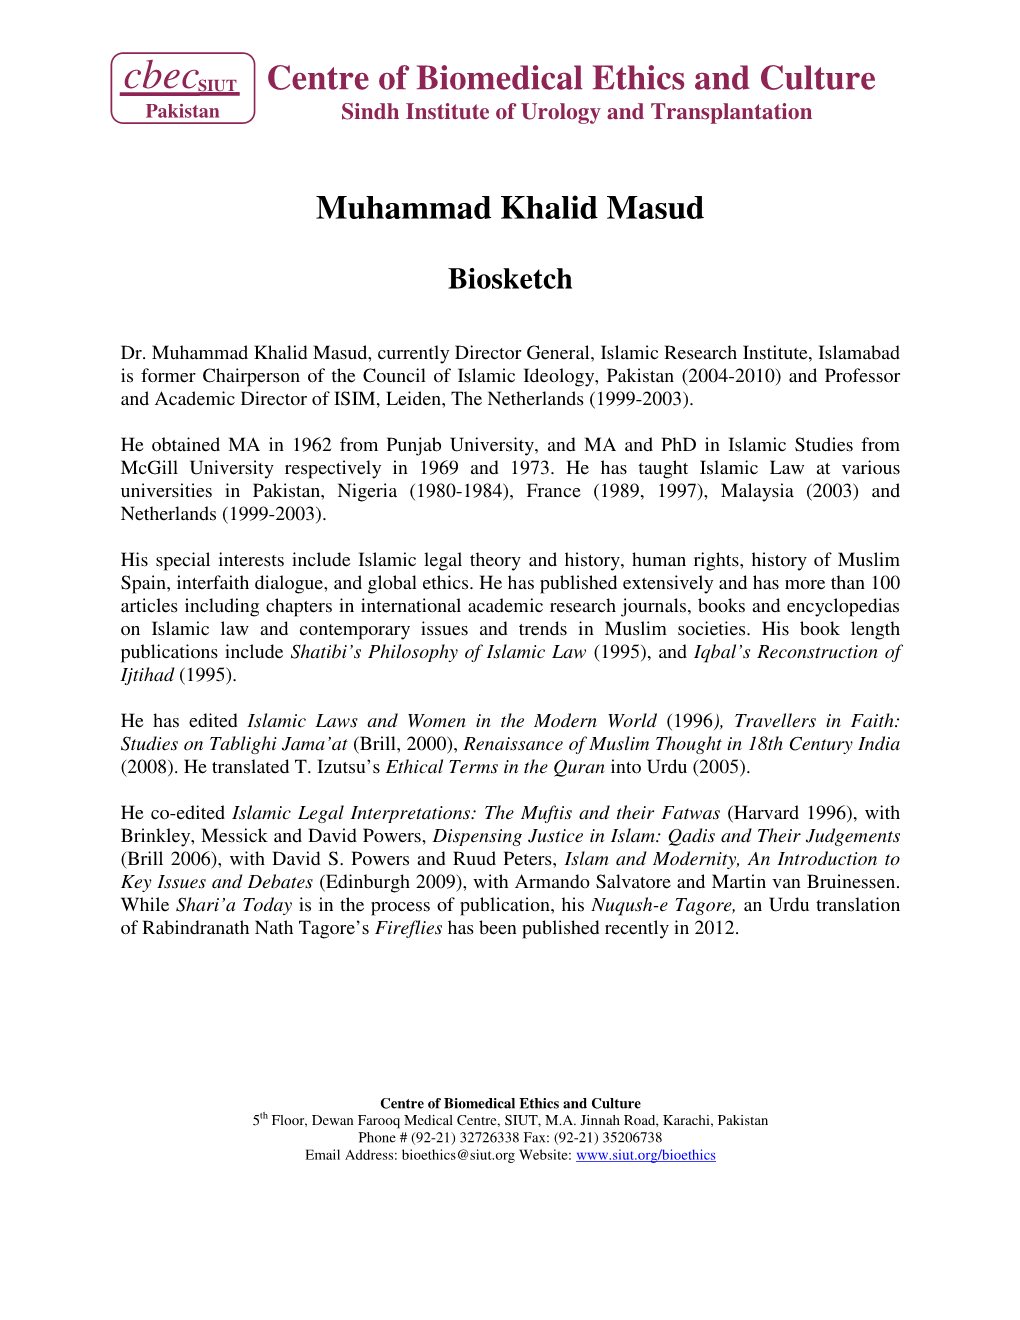 Muhammad Khalid Masud